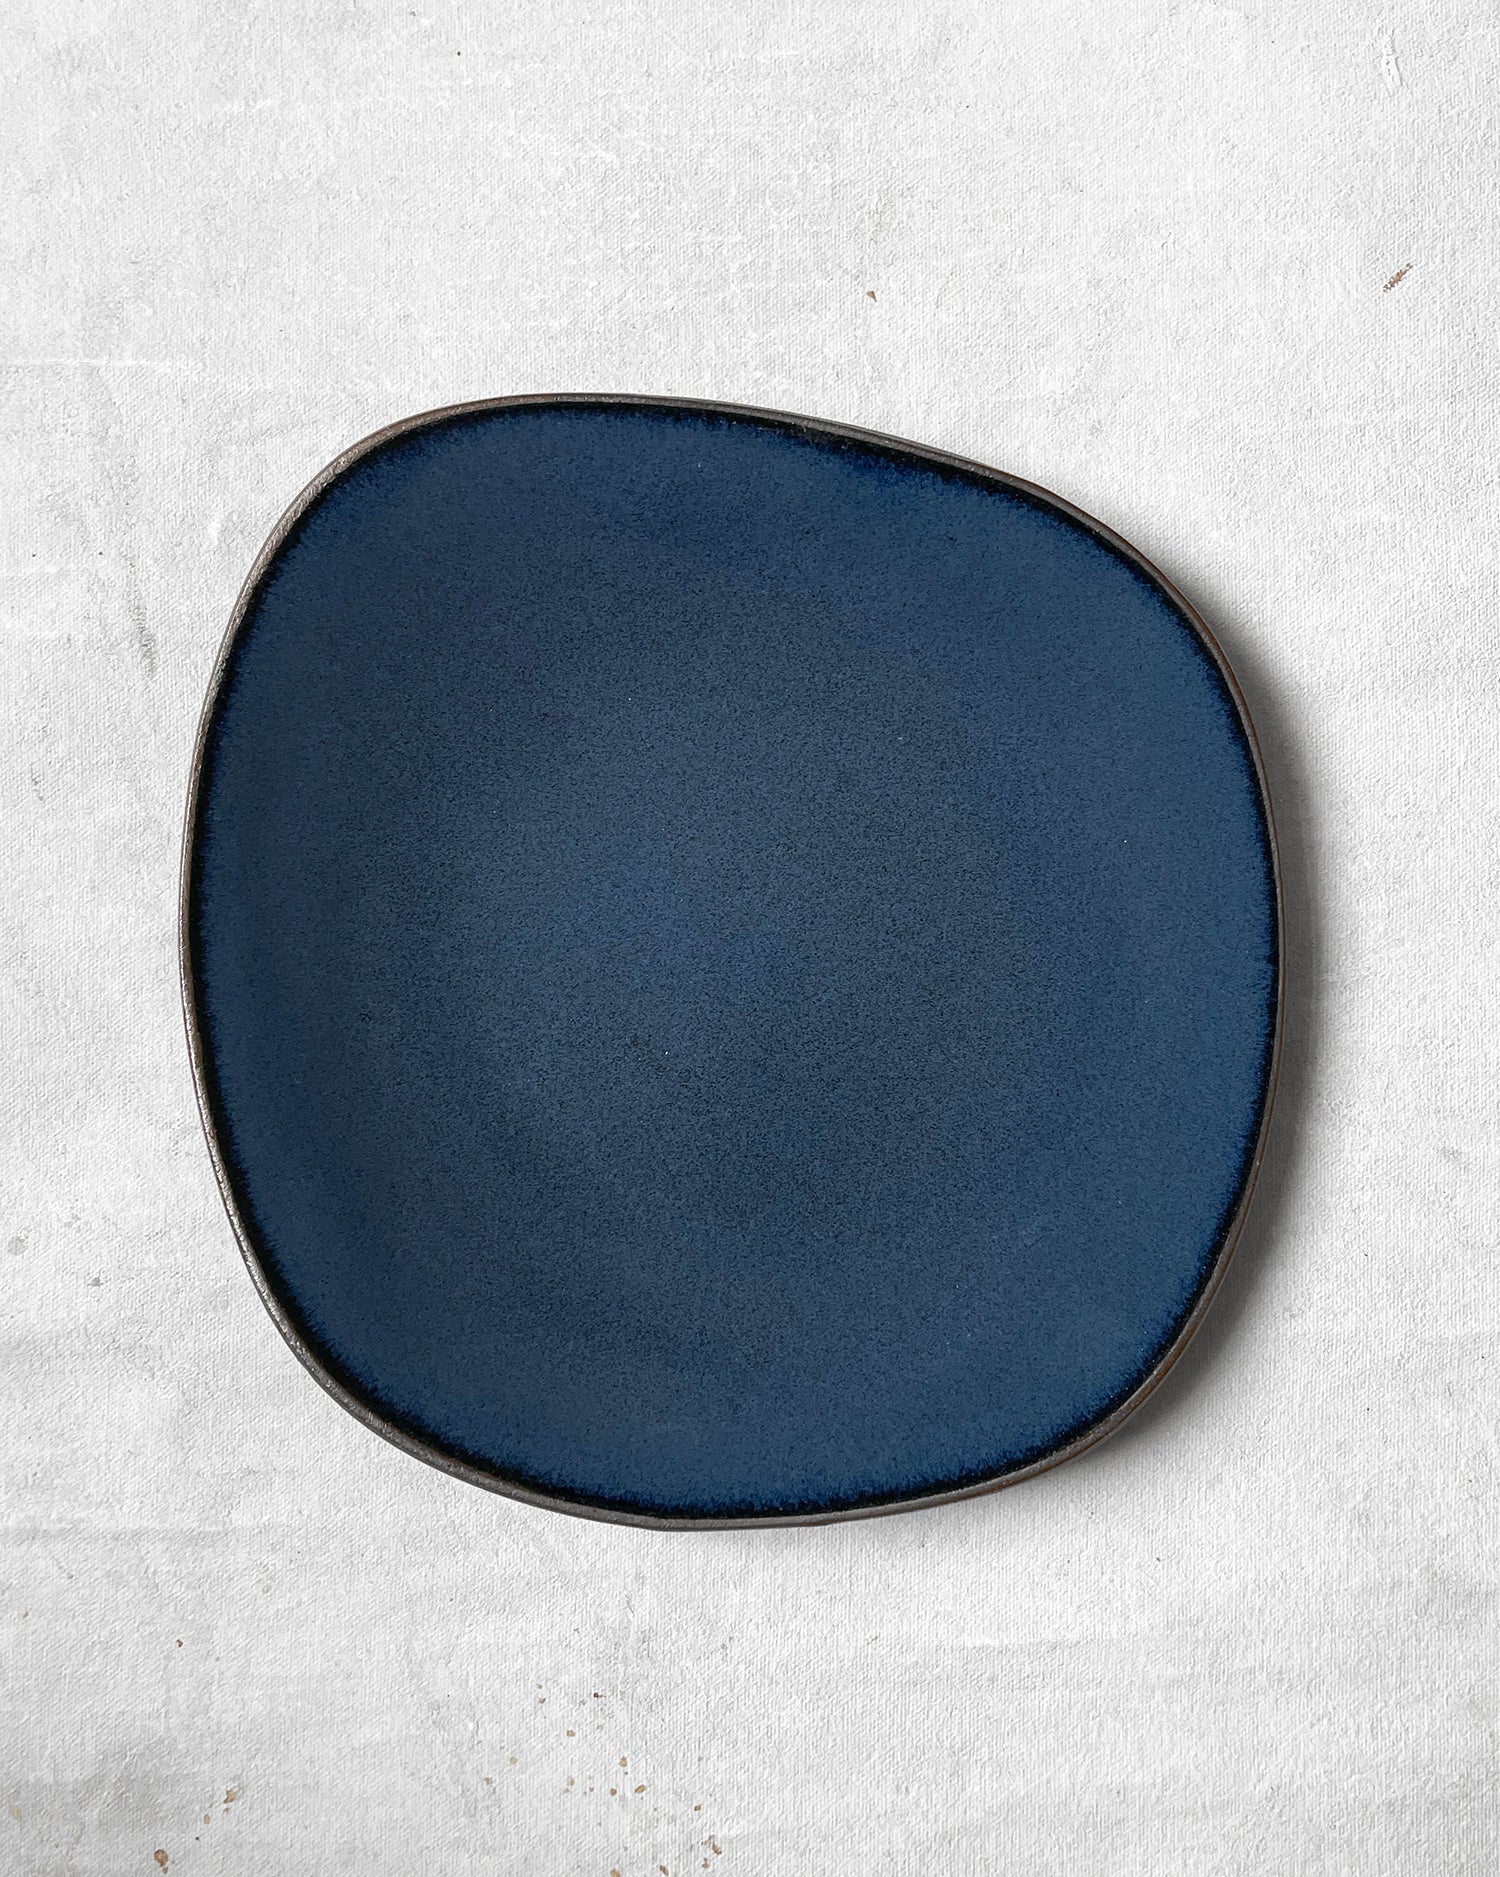 Medium Plate in Navy